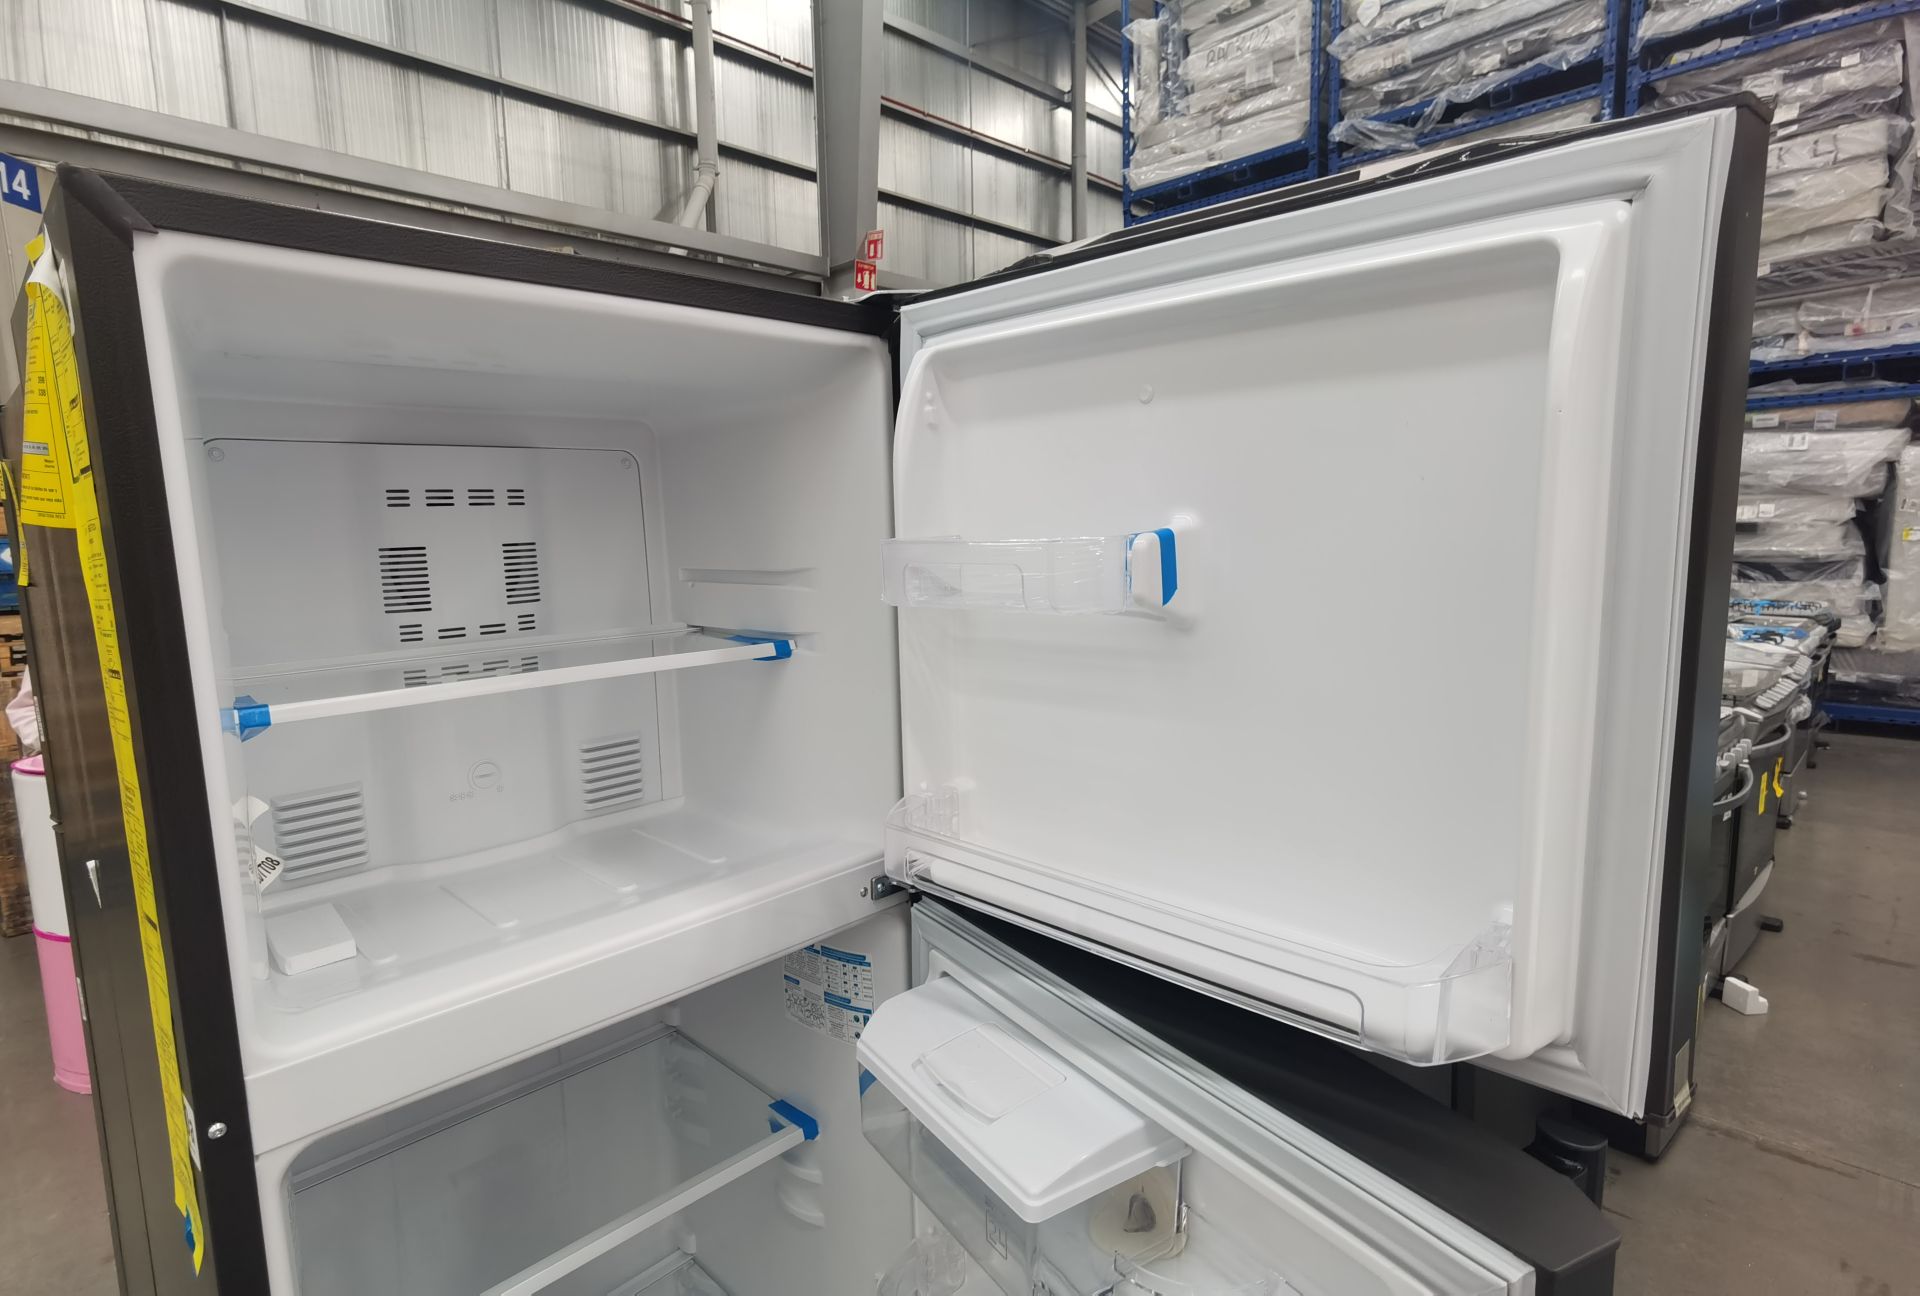 1 Refrigerador con dispensador de agua Marca MABE, Modelo RMA300FJMR, No de serie 2209B702213 - Image 4 of 6